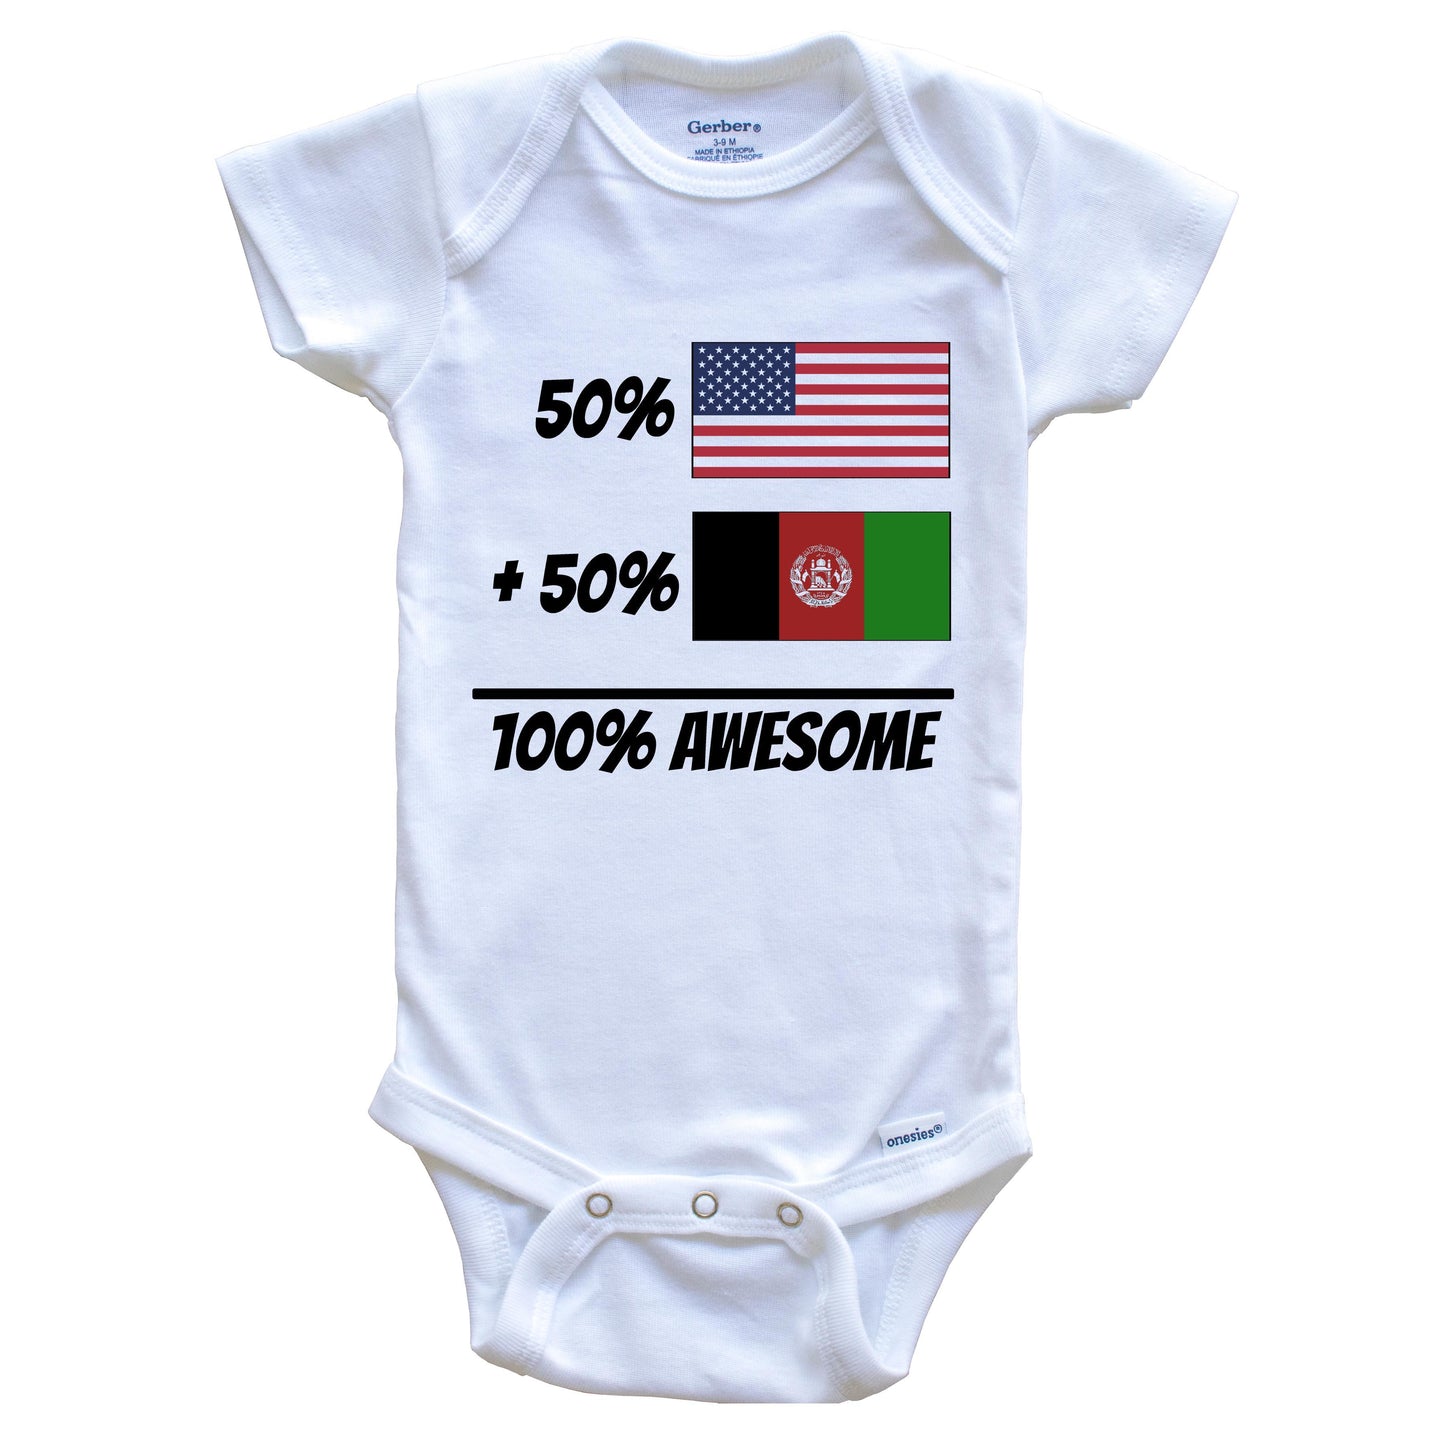 50% American Plus 50% Afghan Equals 100% Awesome Cute Afghanistan Flag Baby Onesie